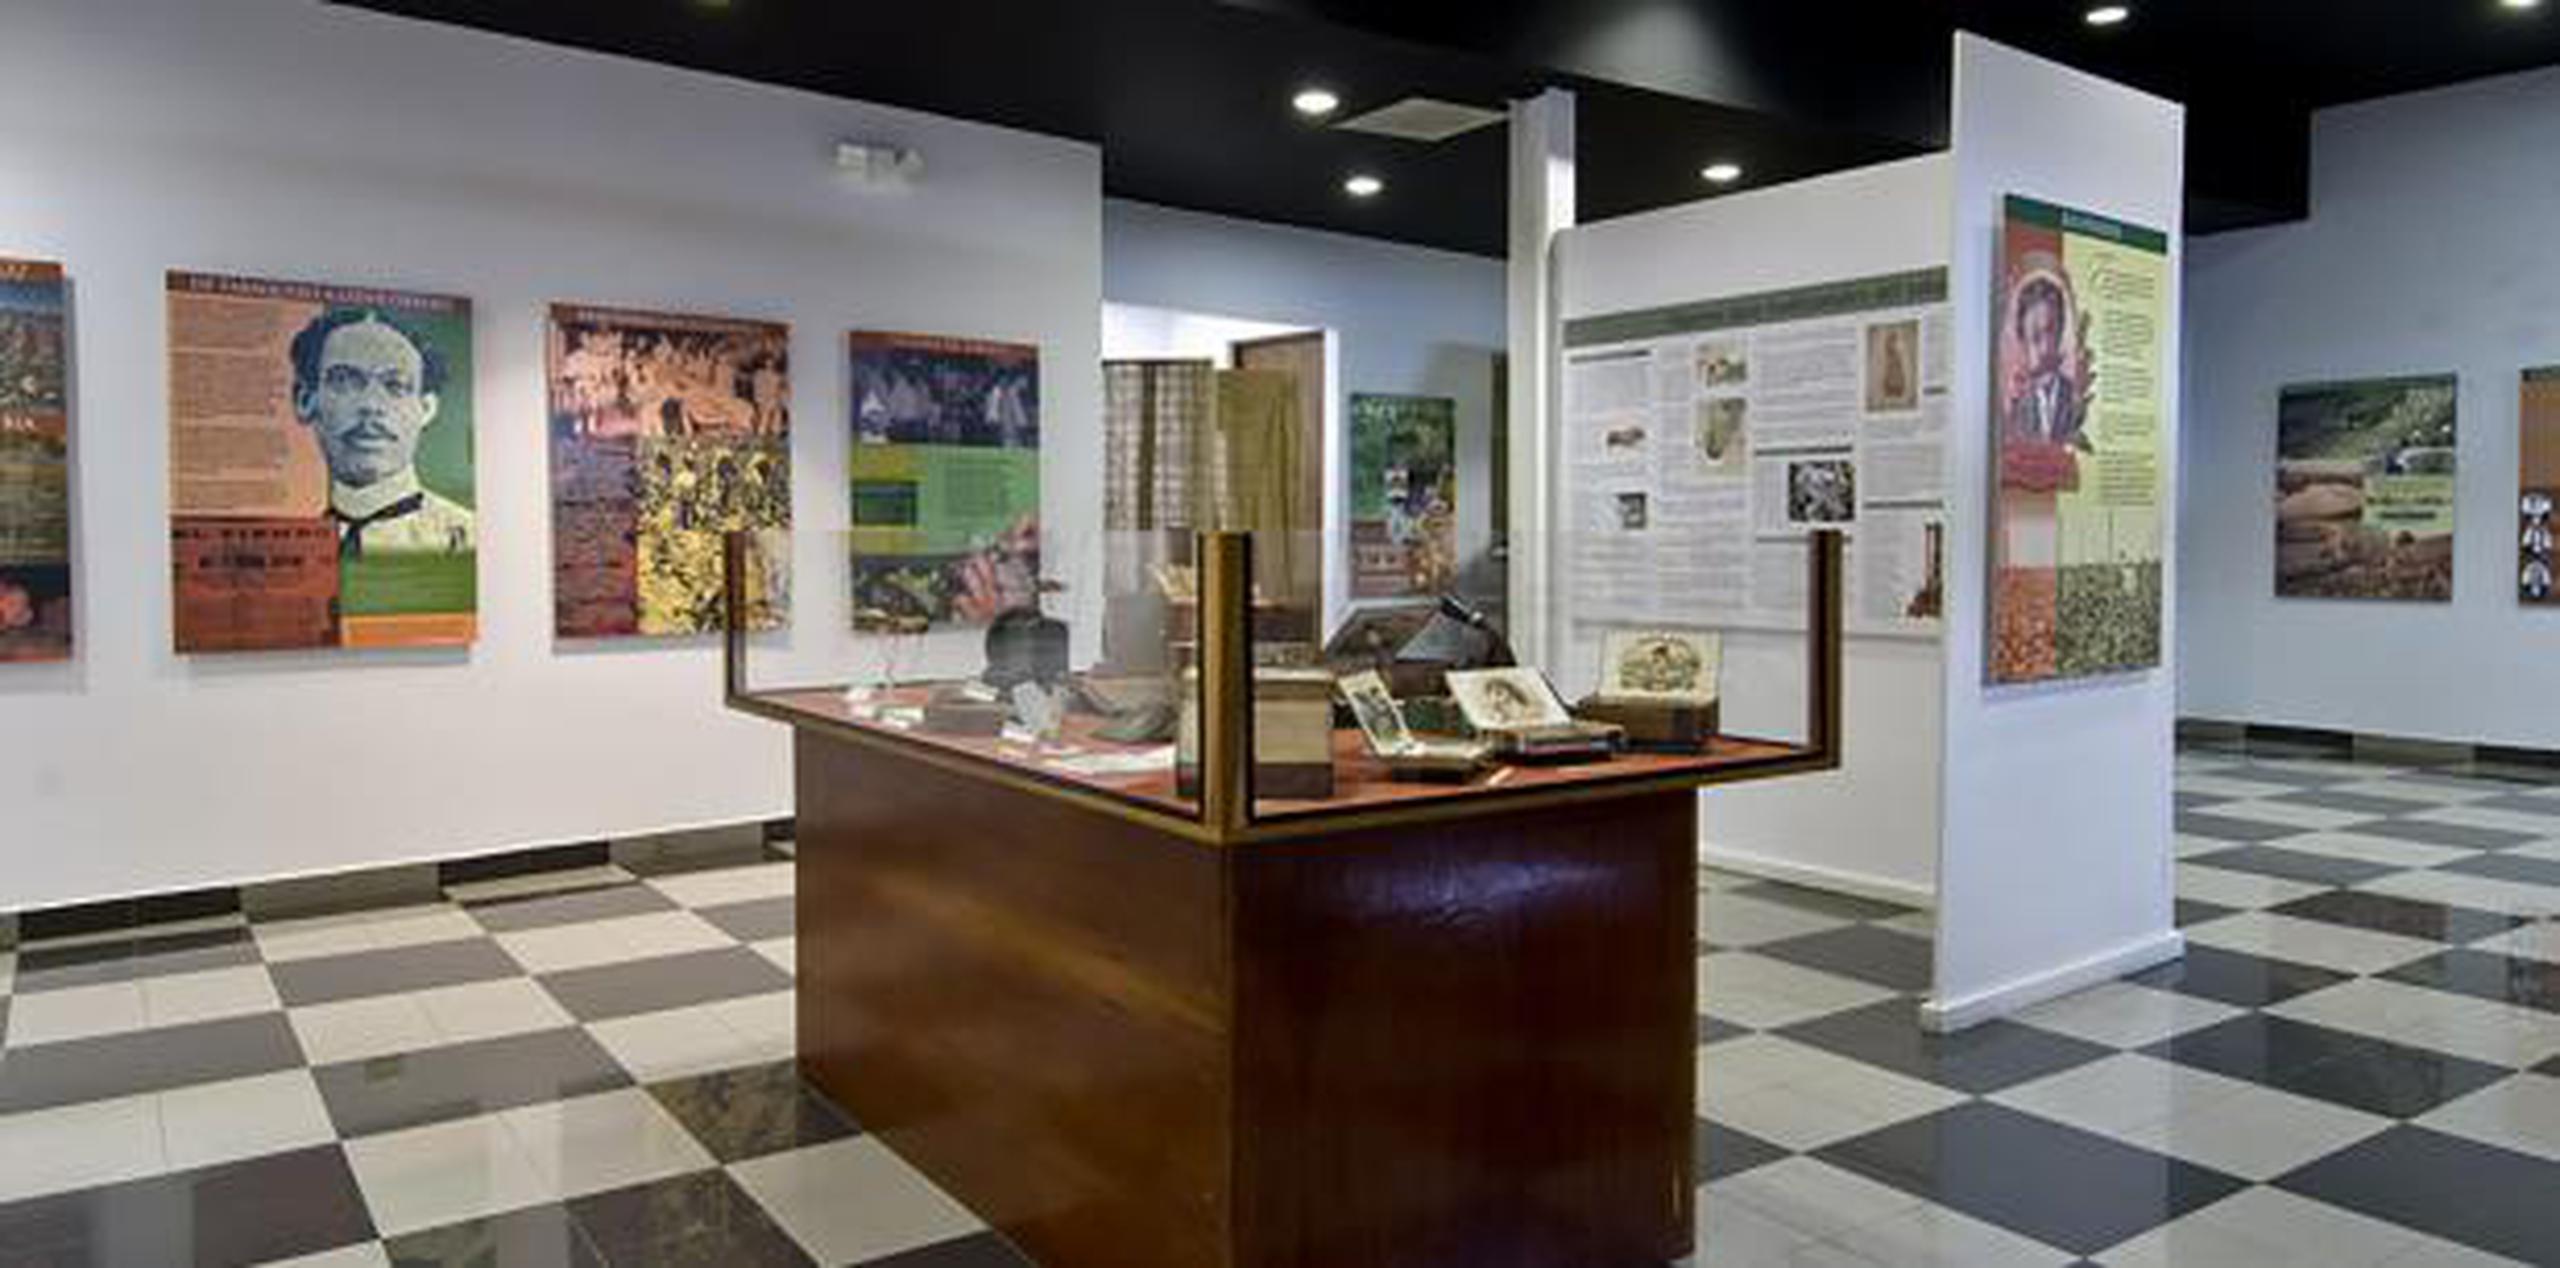 Museo de Artes Populares en Caguas. (Suministrada)